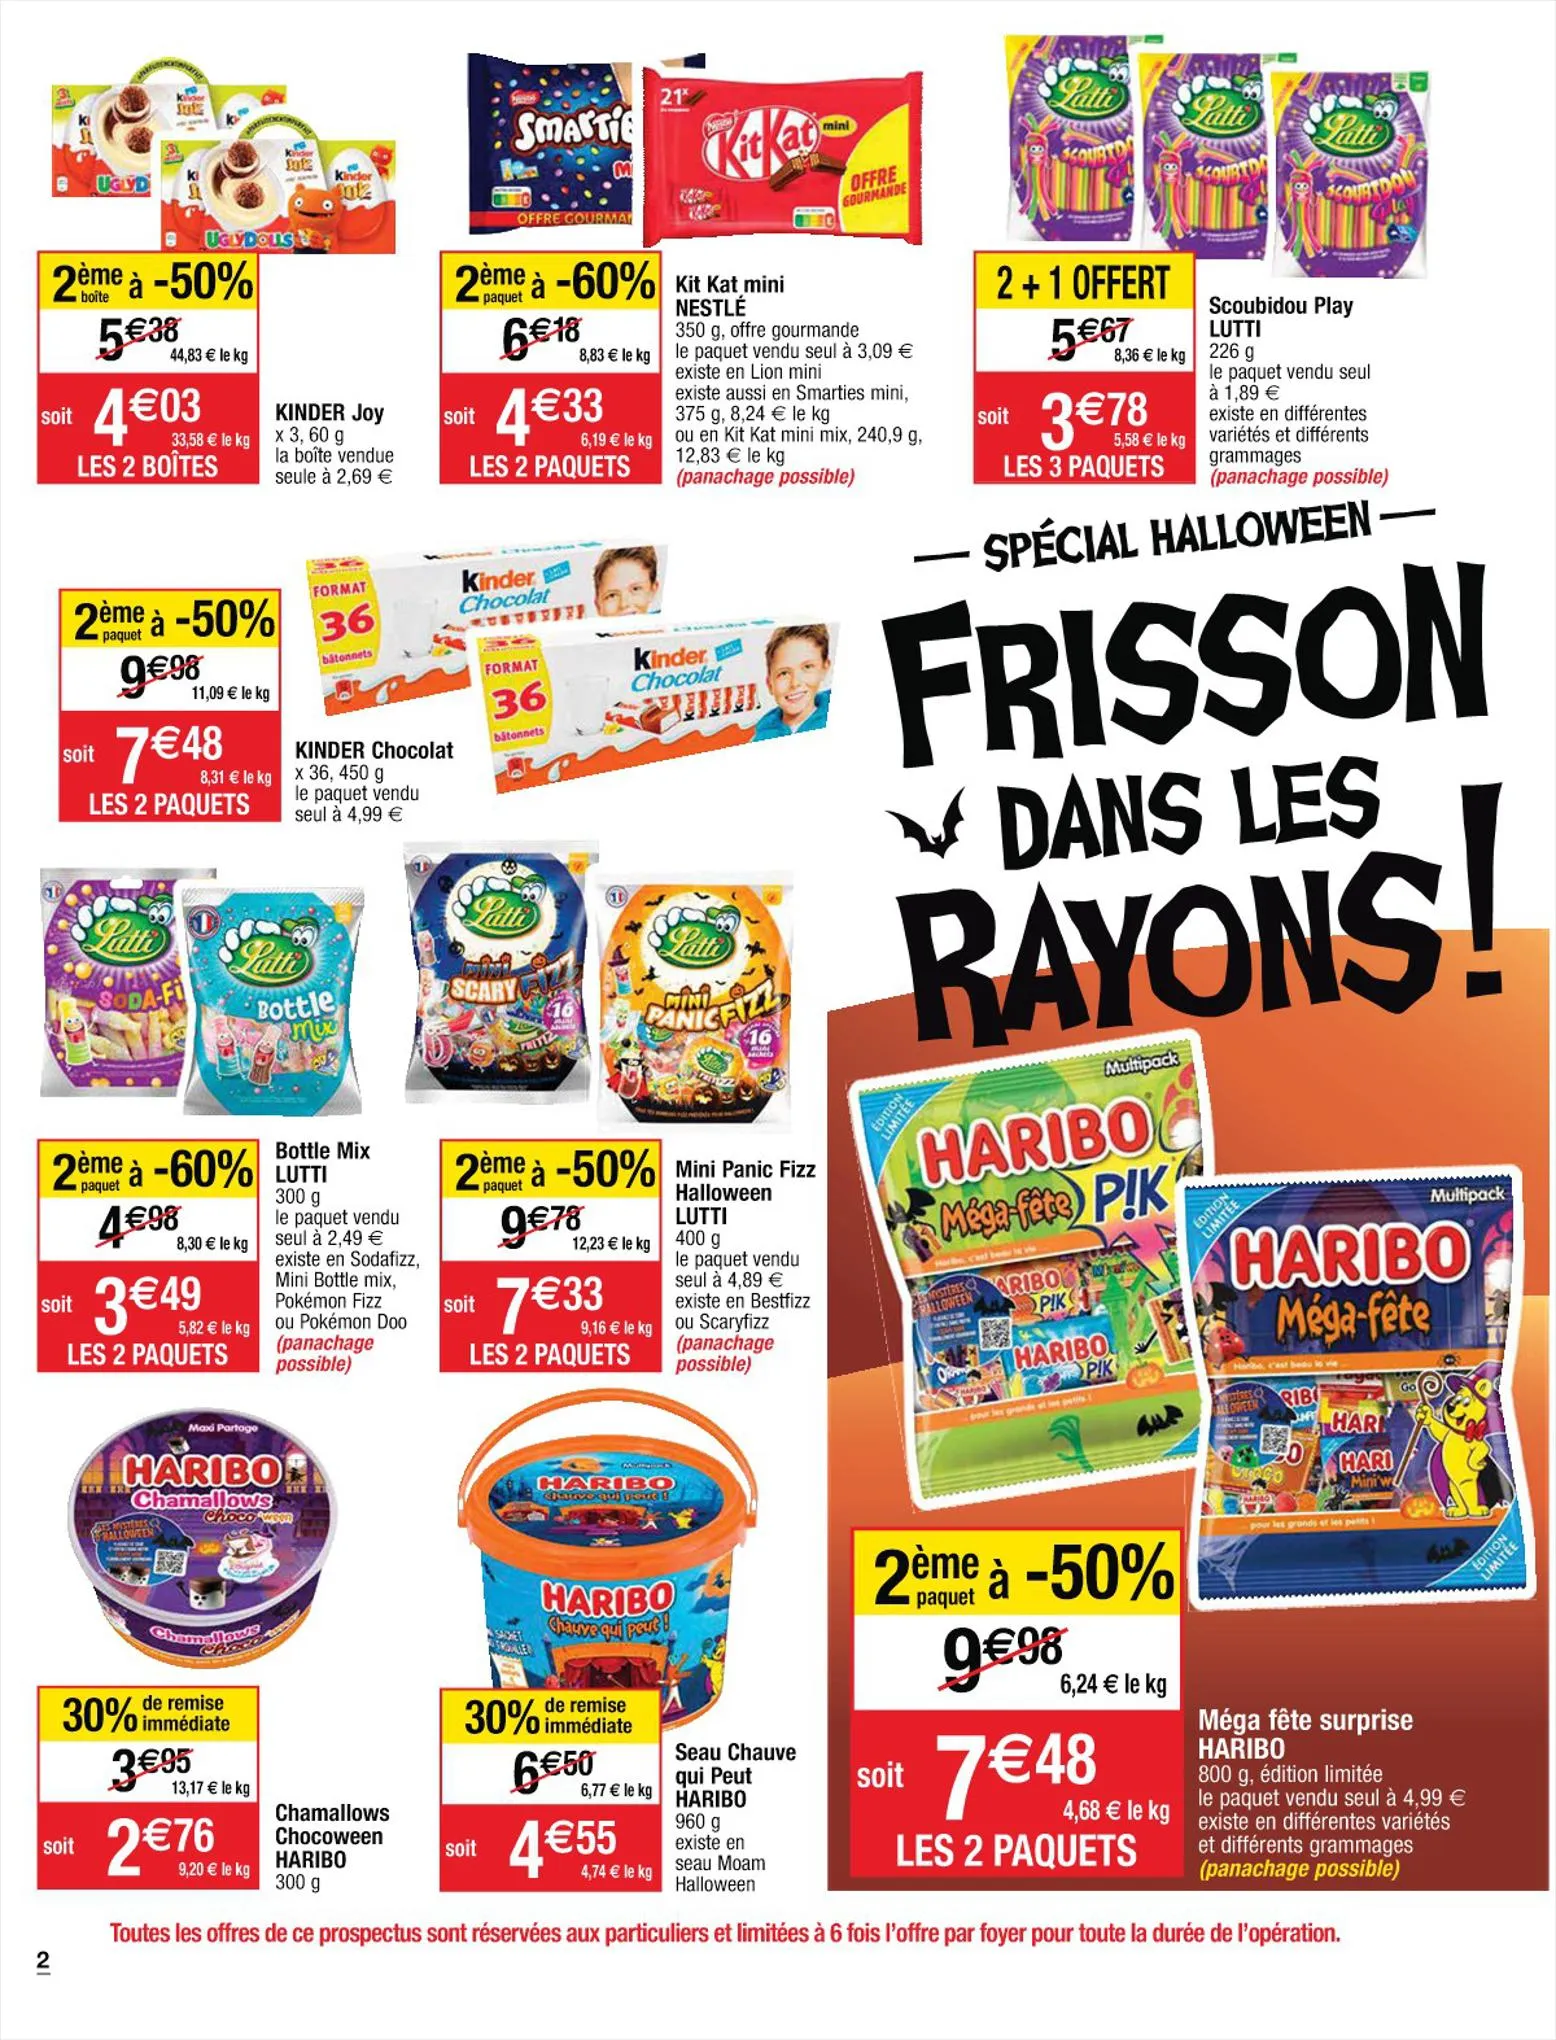 Catalogue Frisson dans les rayons !, page 00002